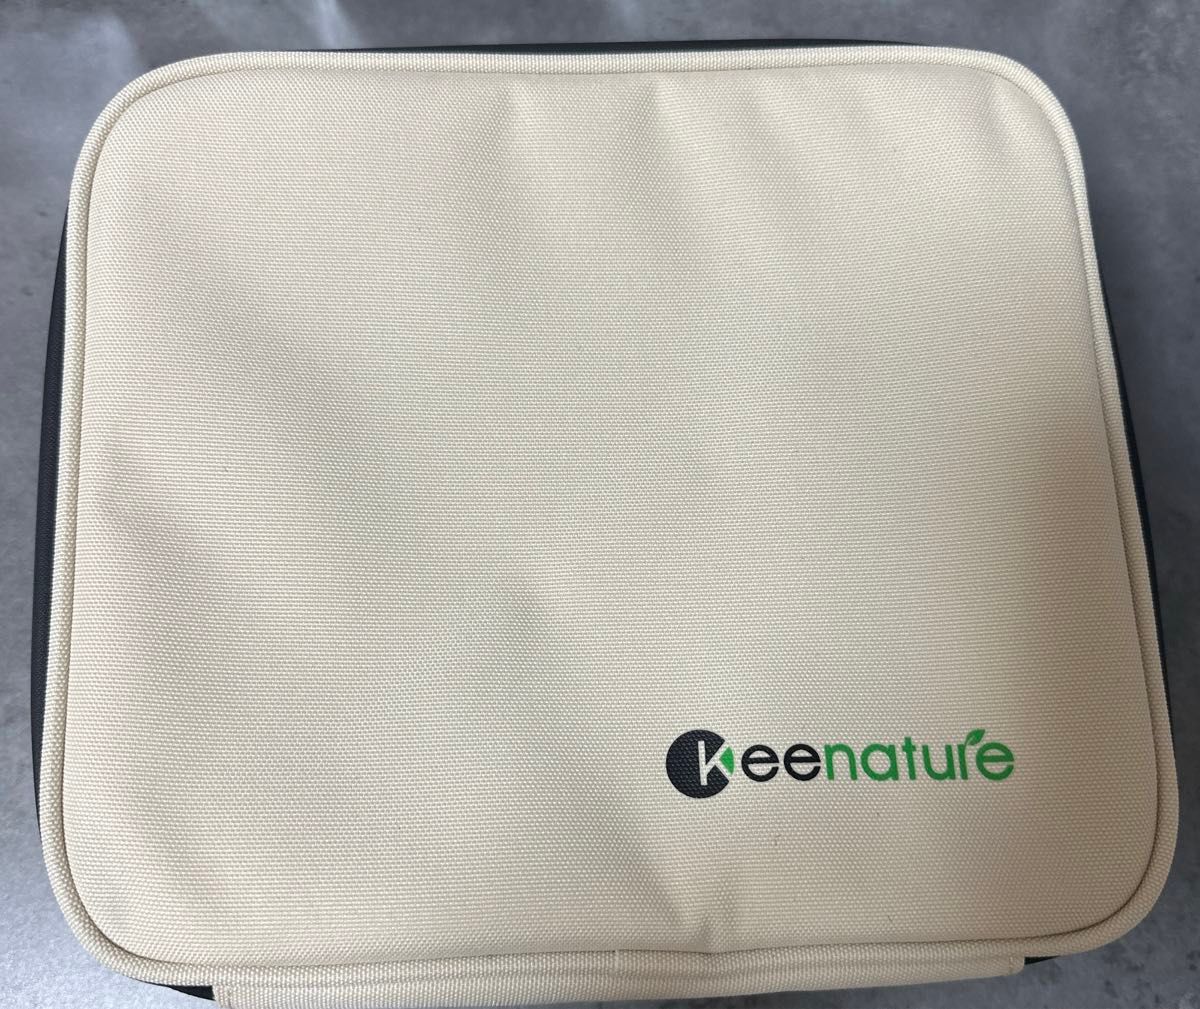 Keenature 調味料ケース スパイスボックス クッキングツール アウトドア 防水耐 収納バッグ まな板 仕切り（ベージュ）